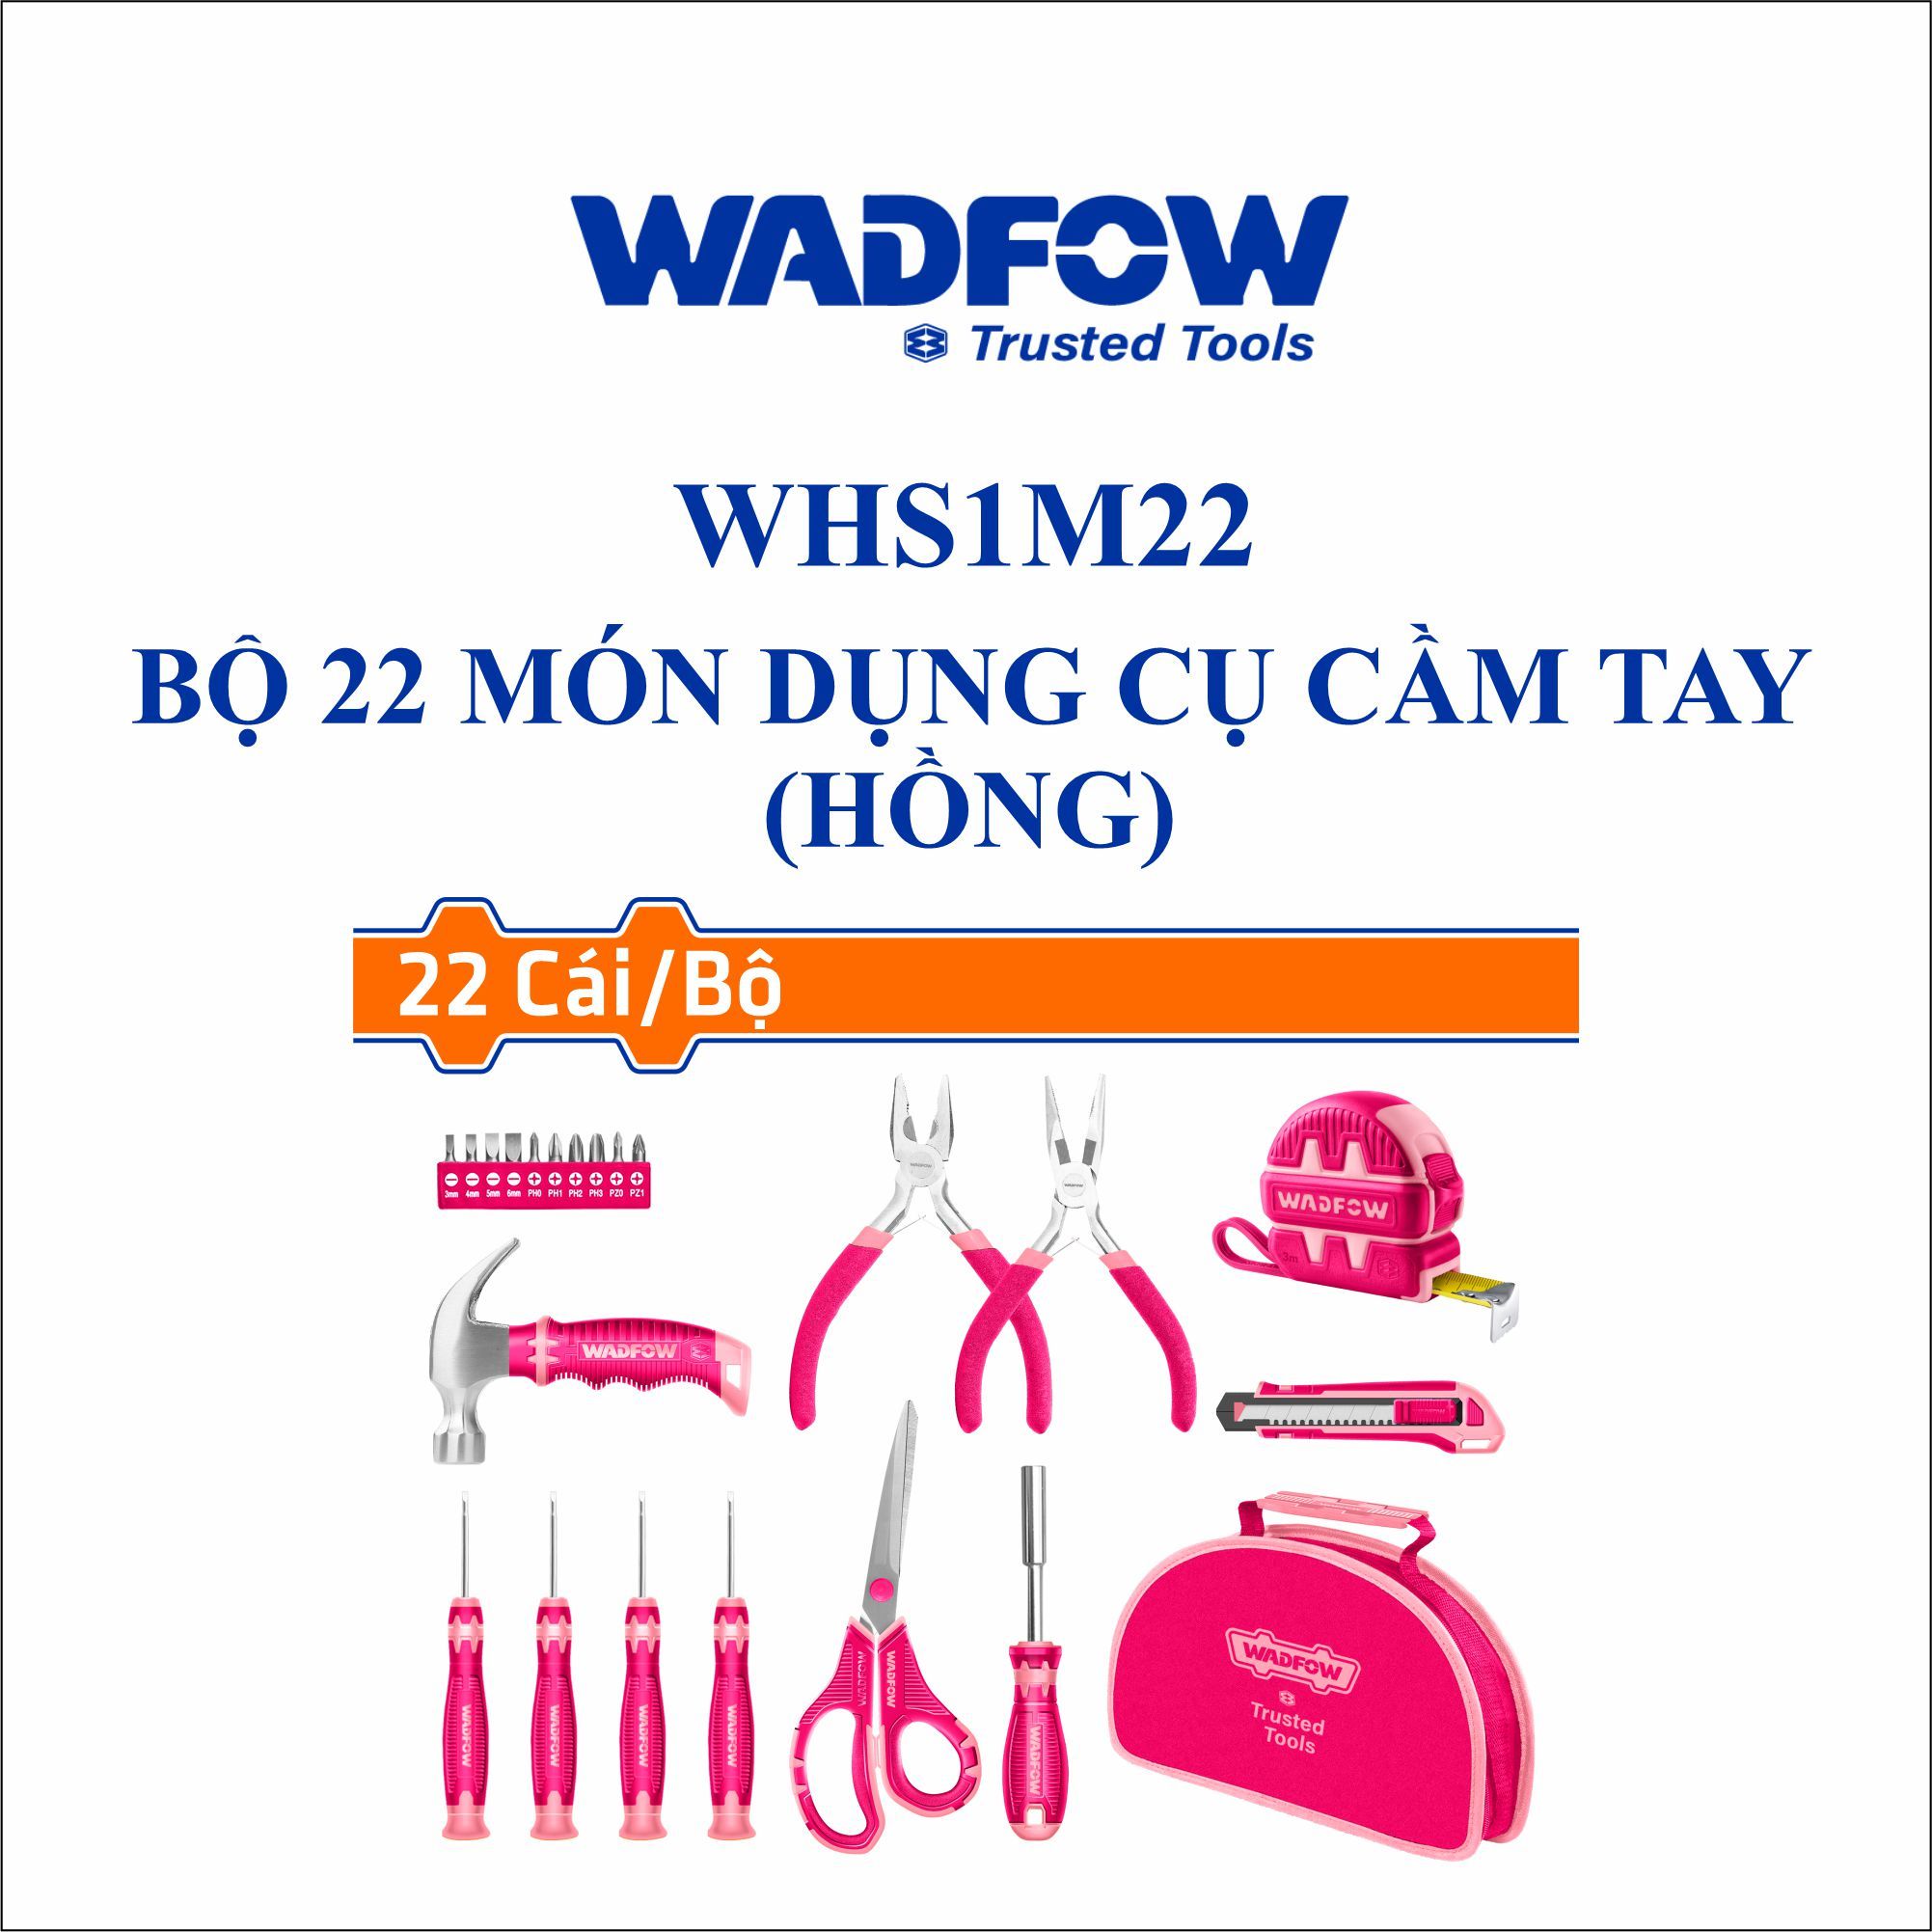  Bộ 22 món dụng cụ cầm tay (hồng) WADFOW WHS1M22 